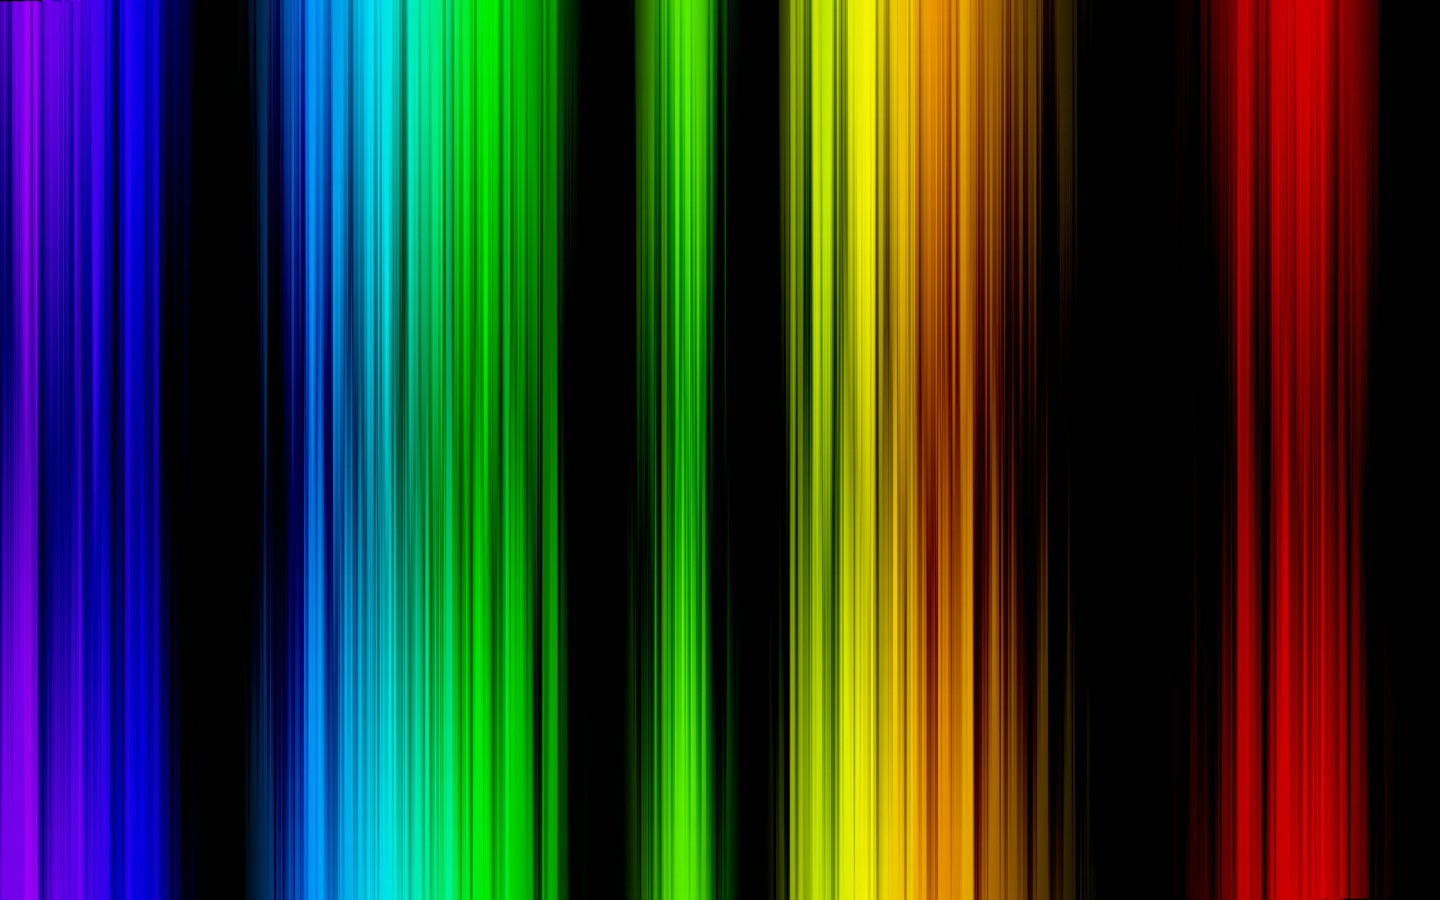 壁纸1440x900抽象背景 彩虹之色 炫彩色谱 抽象视觉壁纸壁纸 抽象背景 彩虹之色壁纸 抽象背景 彩虹之色图片 抽象背景 彩虹之色素材 插画壁纸 插画图库 插画图片素材桌面壁纸